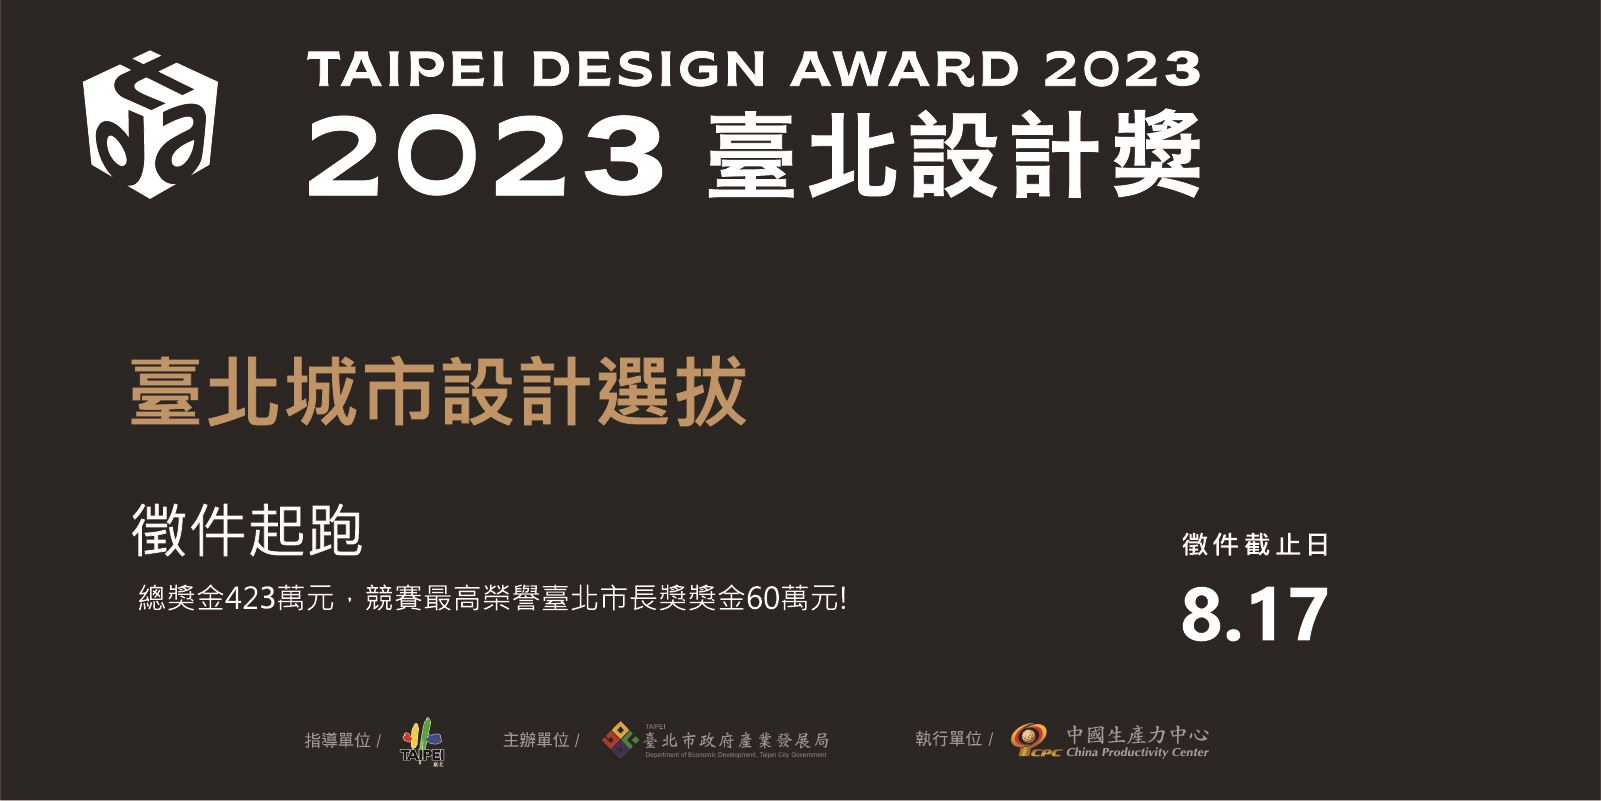 2023臺北設計獎-臺北城市設計選拔